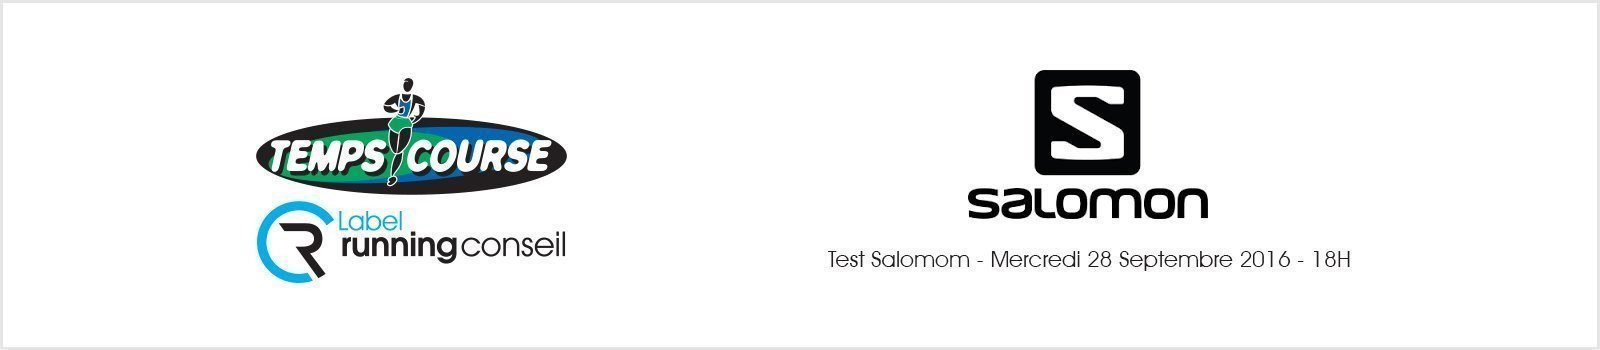 Test Salomom - Mercredi 28 Septembre 2016 - 18H